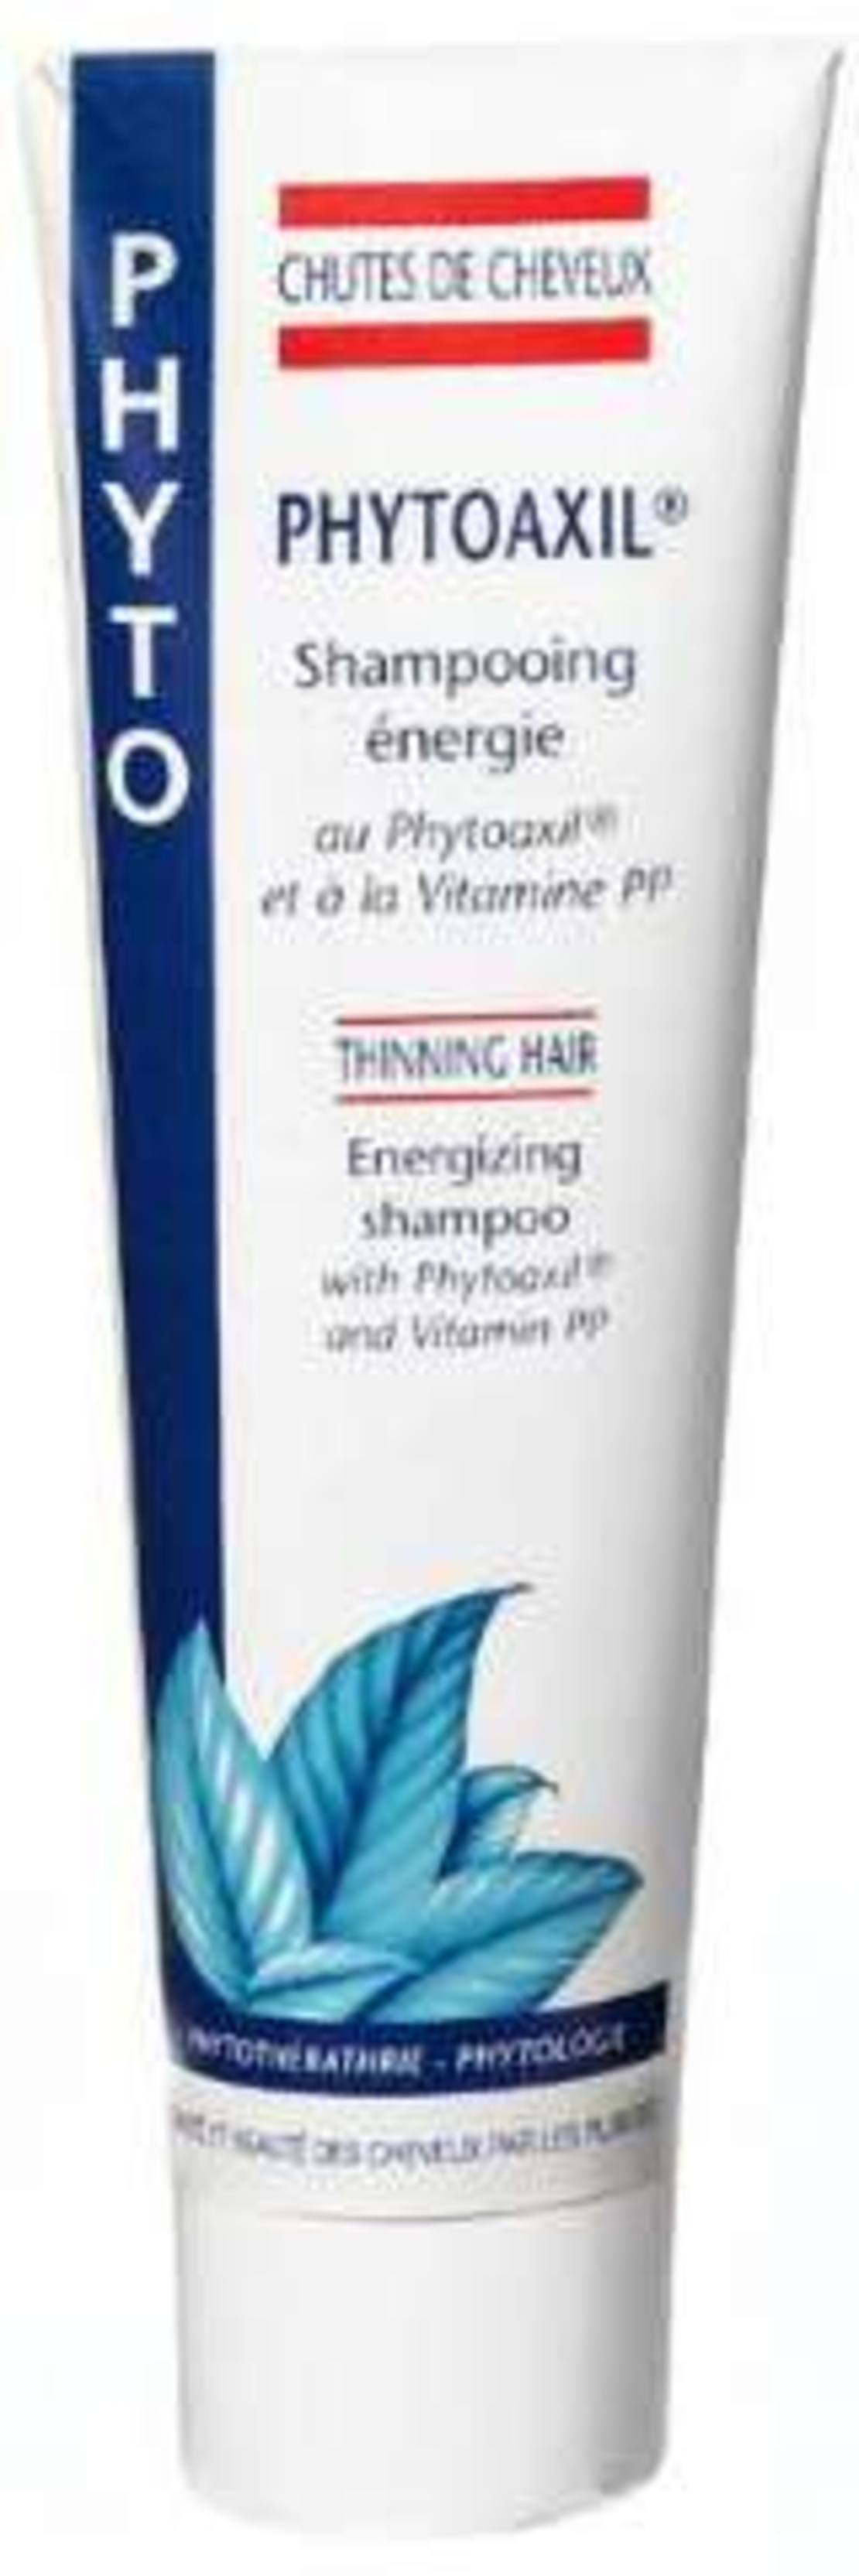 פיטואקסיל שמפו לגברים - לשיער דליל Phytoaxil Shampoo